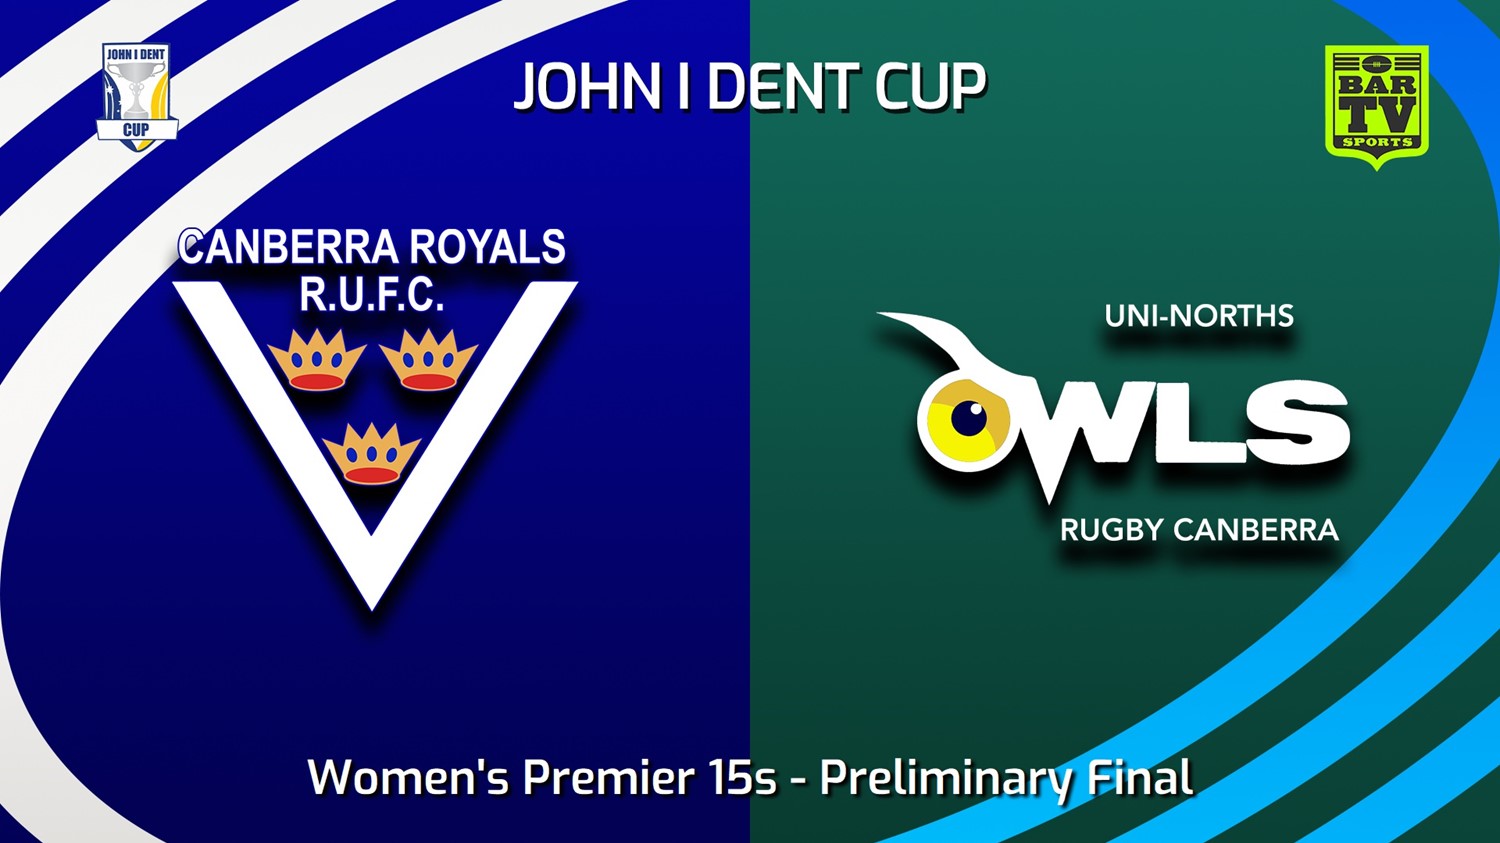 230819-John I Dent (ACT) Preliminary Final - Women's Premier 15s - Canberra Royals v UNI-North Owls Slate Image